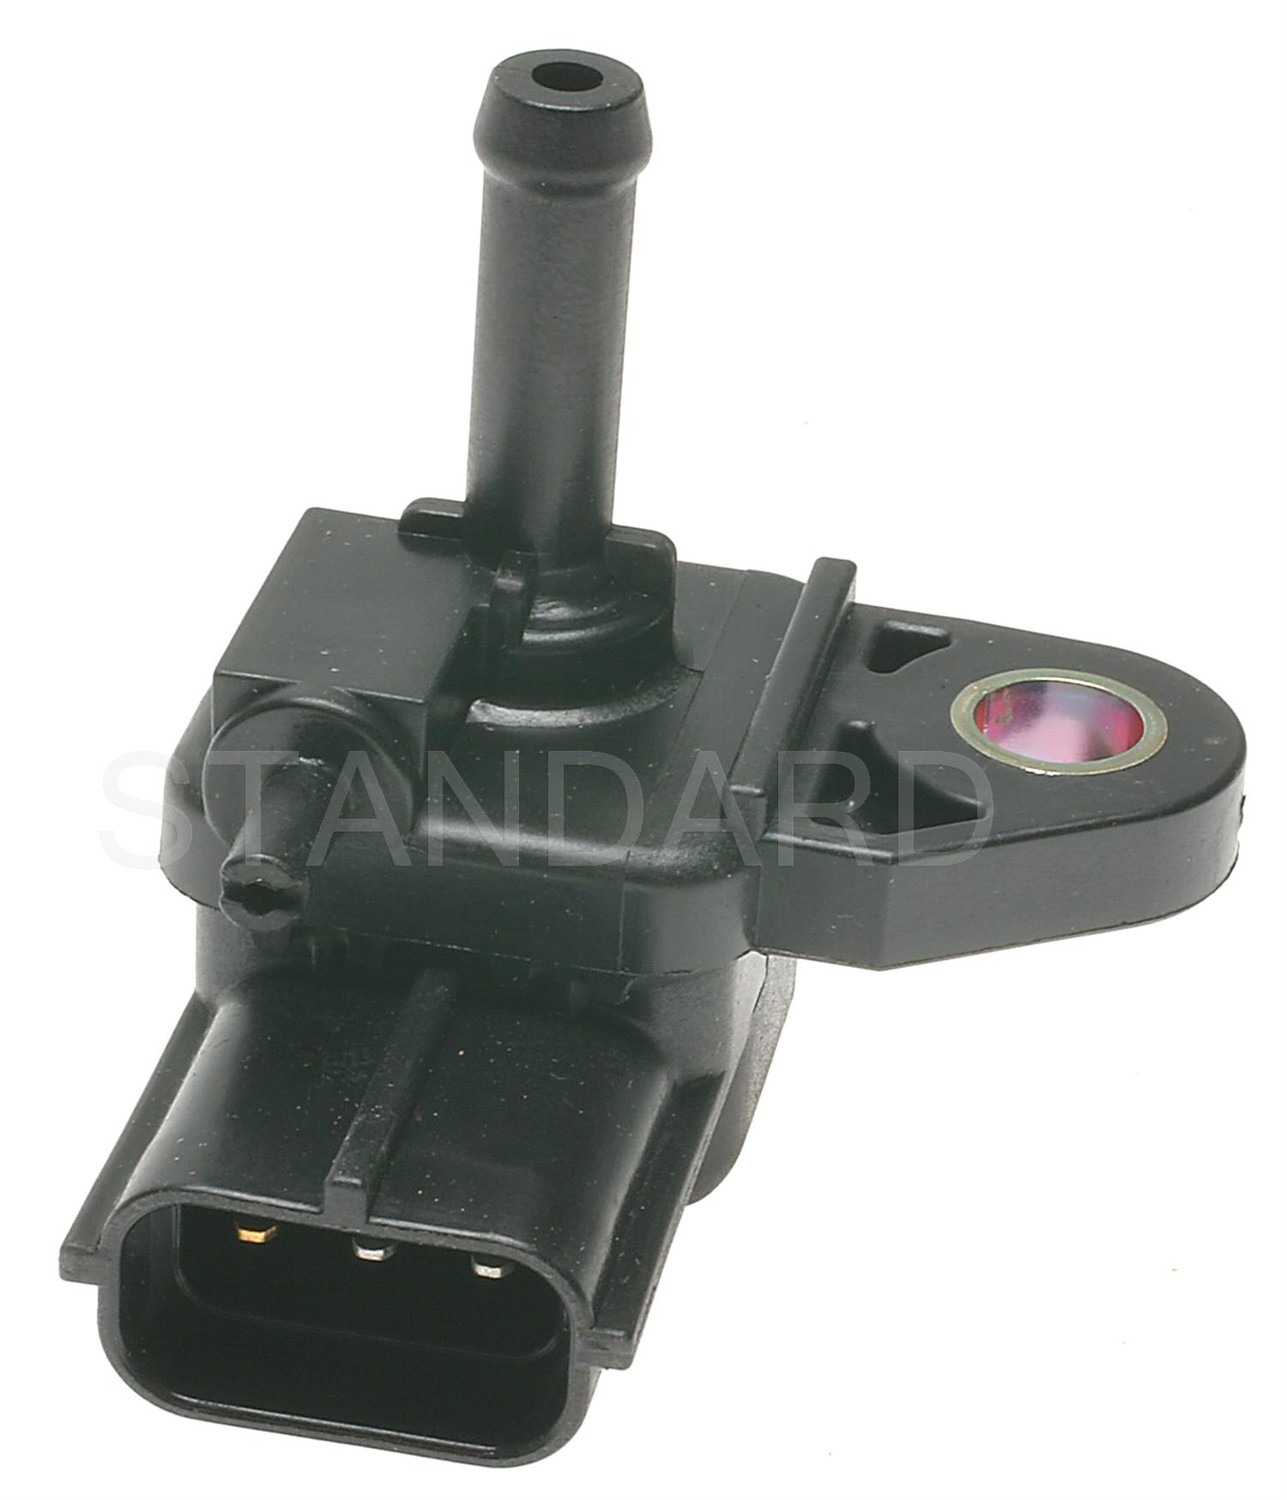 Foto de Sensor de Presin del Sistema de Control de Evaporacin para Mazda MPV 1996 1997 1998 2000 2001 Marca STANDARD MOTOR Nmero de Parte AS137